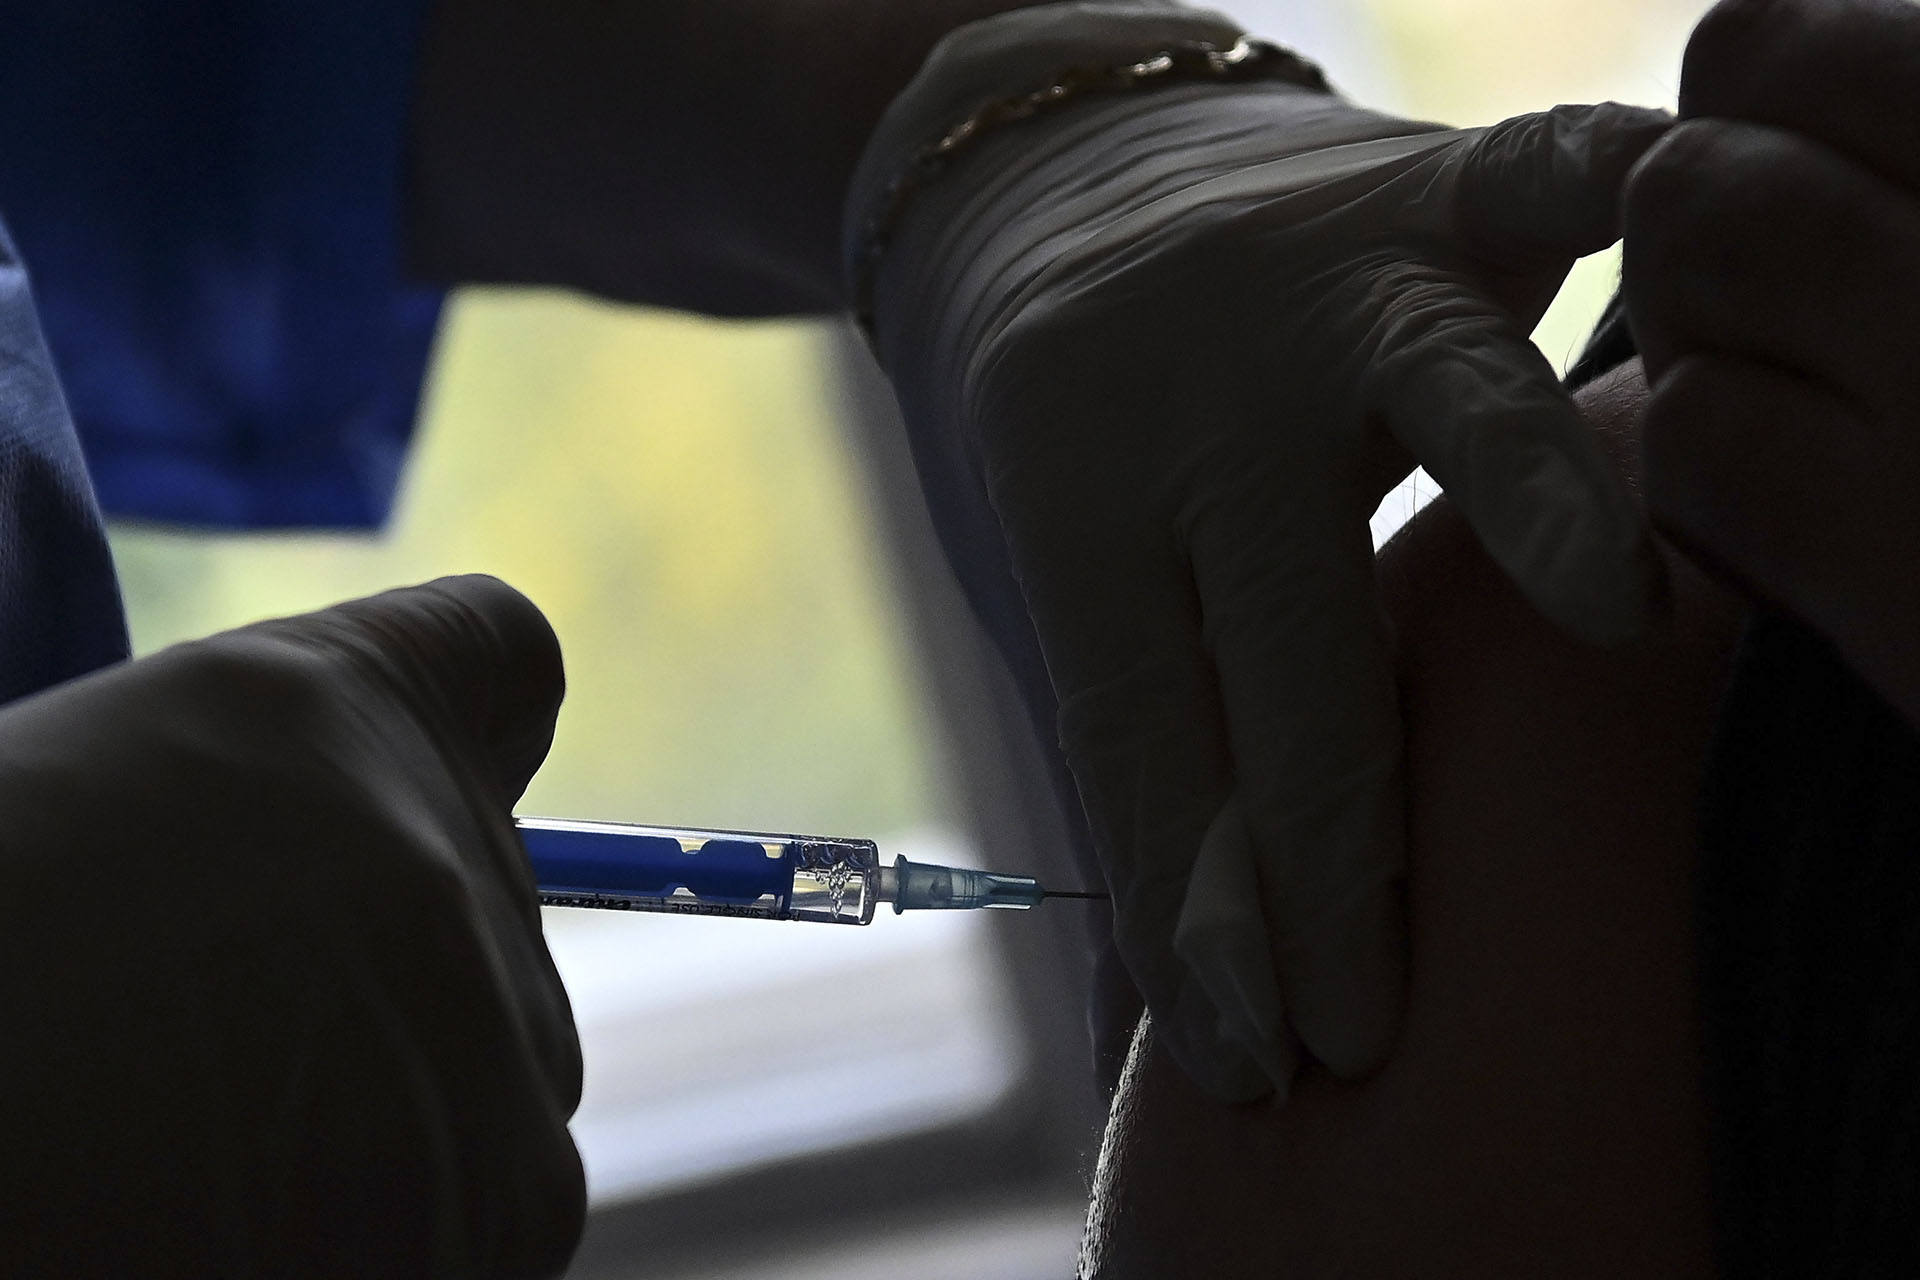 Meghalt egy 20 éves lány, Szlovénia felfüggeszti a J&J vakcina használatát